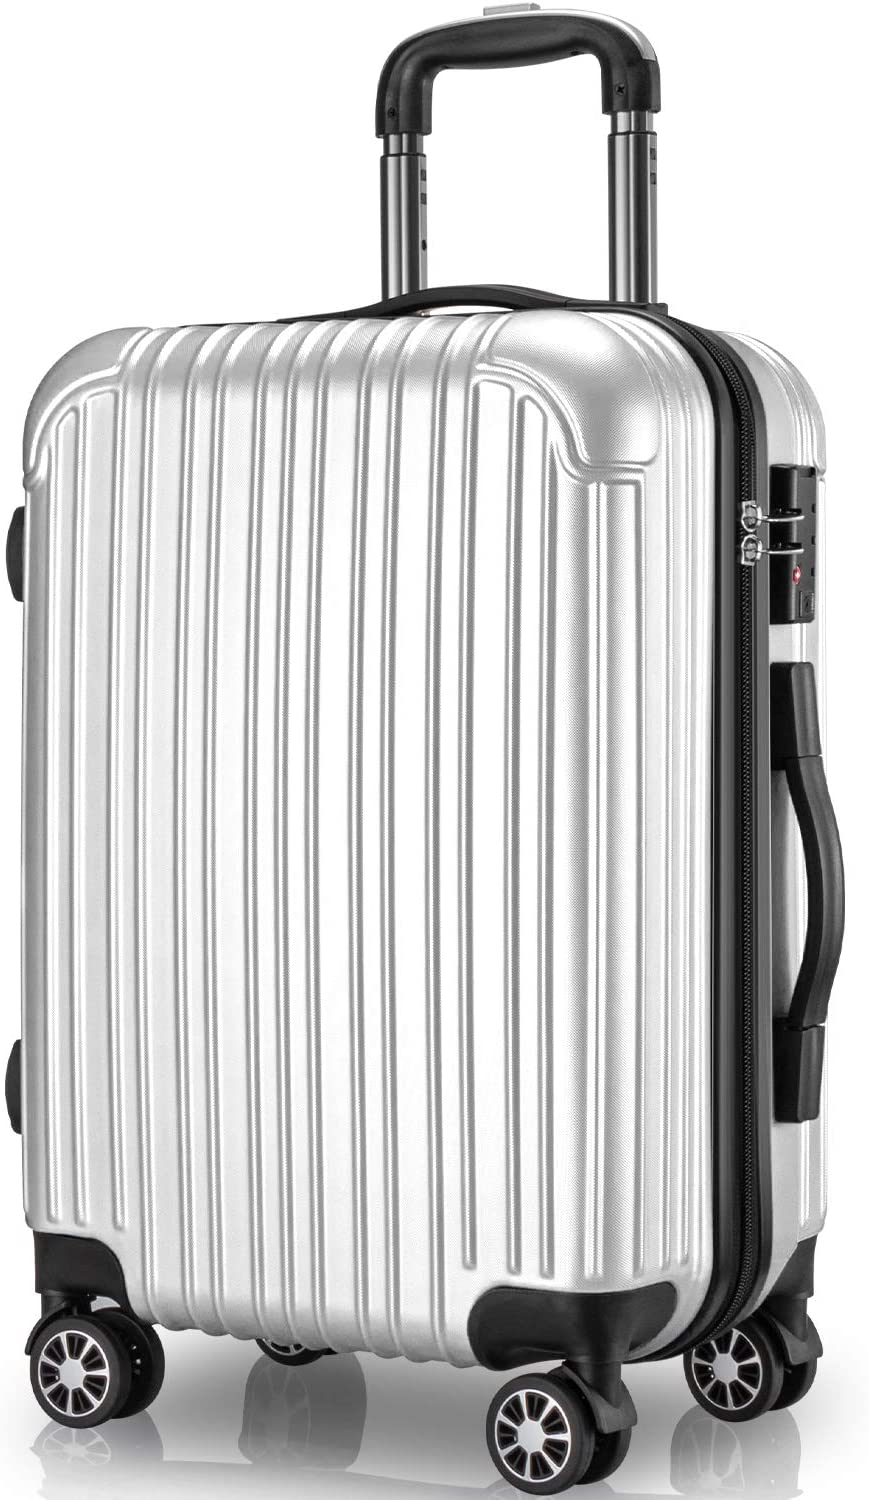 スーツケース キャリーケース 97L Lサイズ キャリーバッグ ファスナー式 旅行 ビジネス 出張 カバン バッグ 大型 大量収納 軽量 おしゃれ 静音